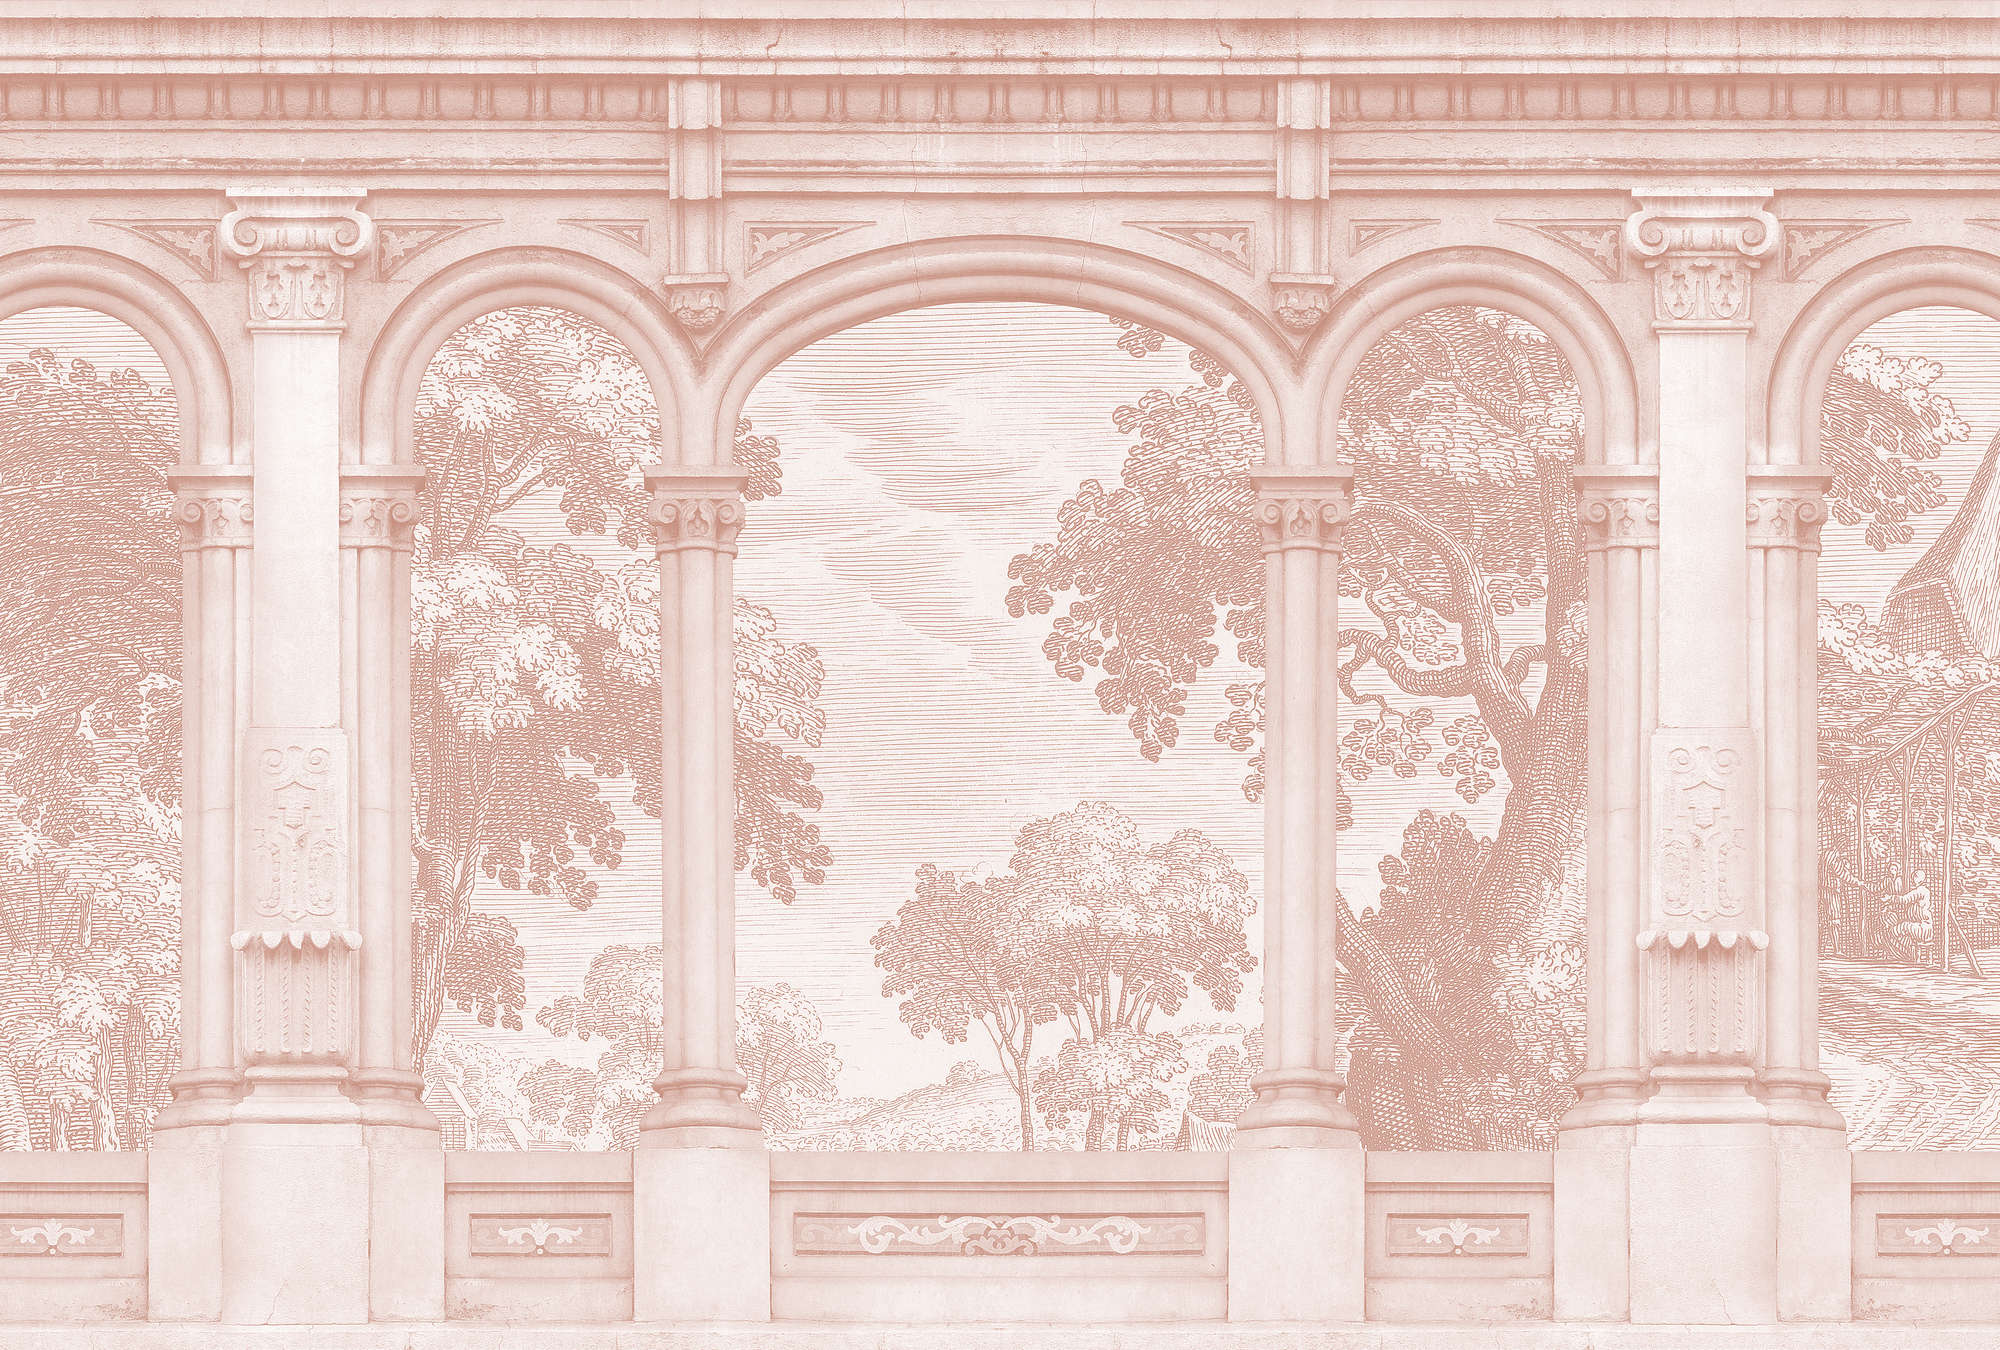             Roma 3 - Papier peint rose Historic Design avec fenêtre en arc de cercle
        